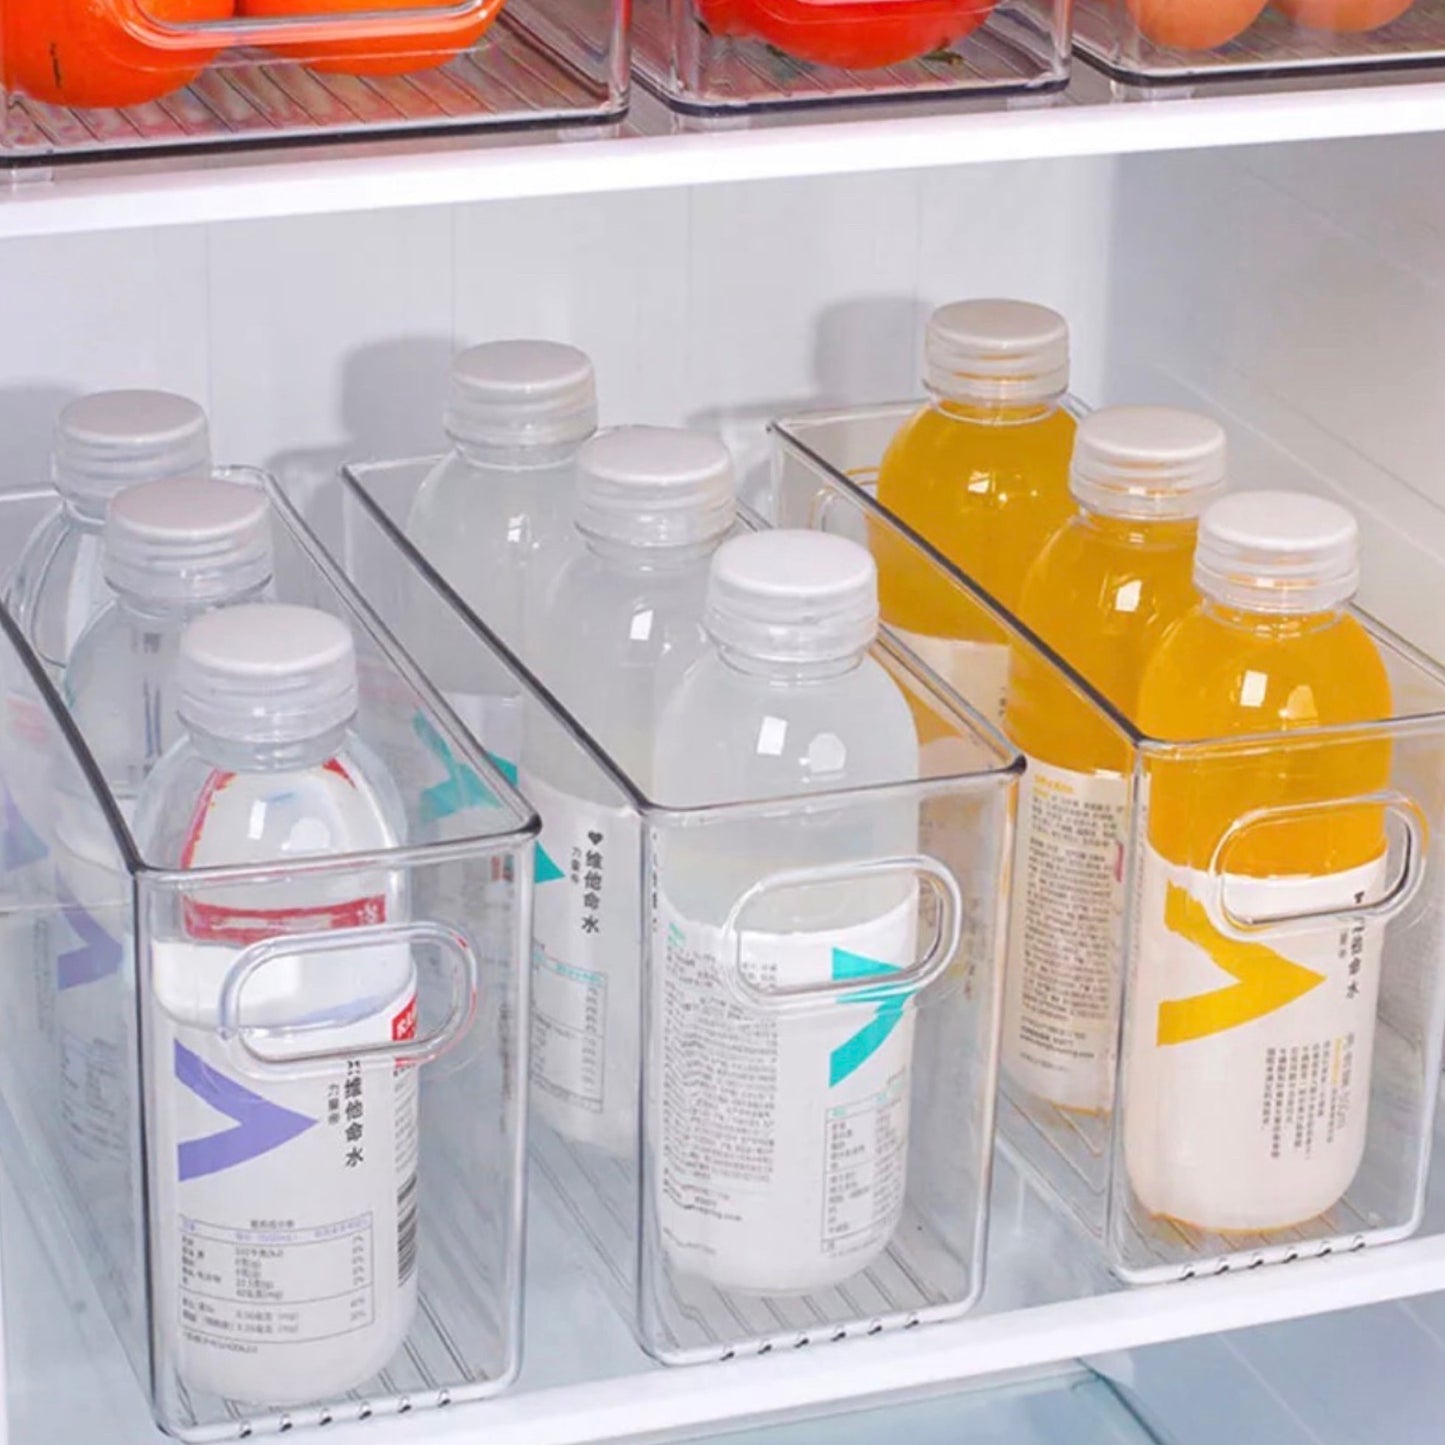 Transparente Aufbewahrungsboxen im Kühlschrank, befüllt mit ordentlich ausgerichteten Wasserflaschen und farbigen Getränken. Die Etiketten der Flaschen sind in verschiedenen Sprachen beschriftet, was auf ein multikulturelles Sortiment hindeutet. Die Boxen ermöglichen eine klare Sichtbarkeit und leichten Zugang zu den Getränken und nutzen den verfügbaren Platz effizient.